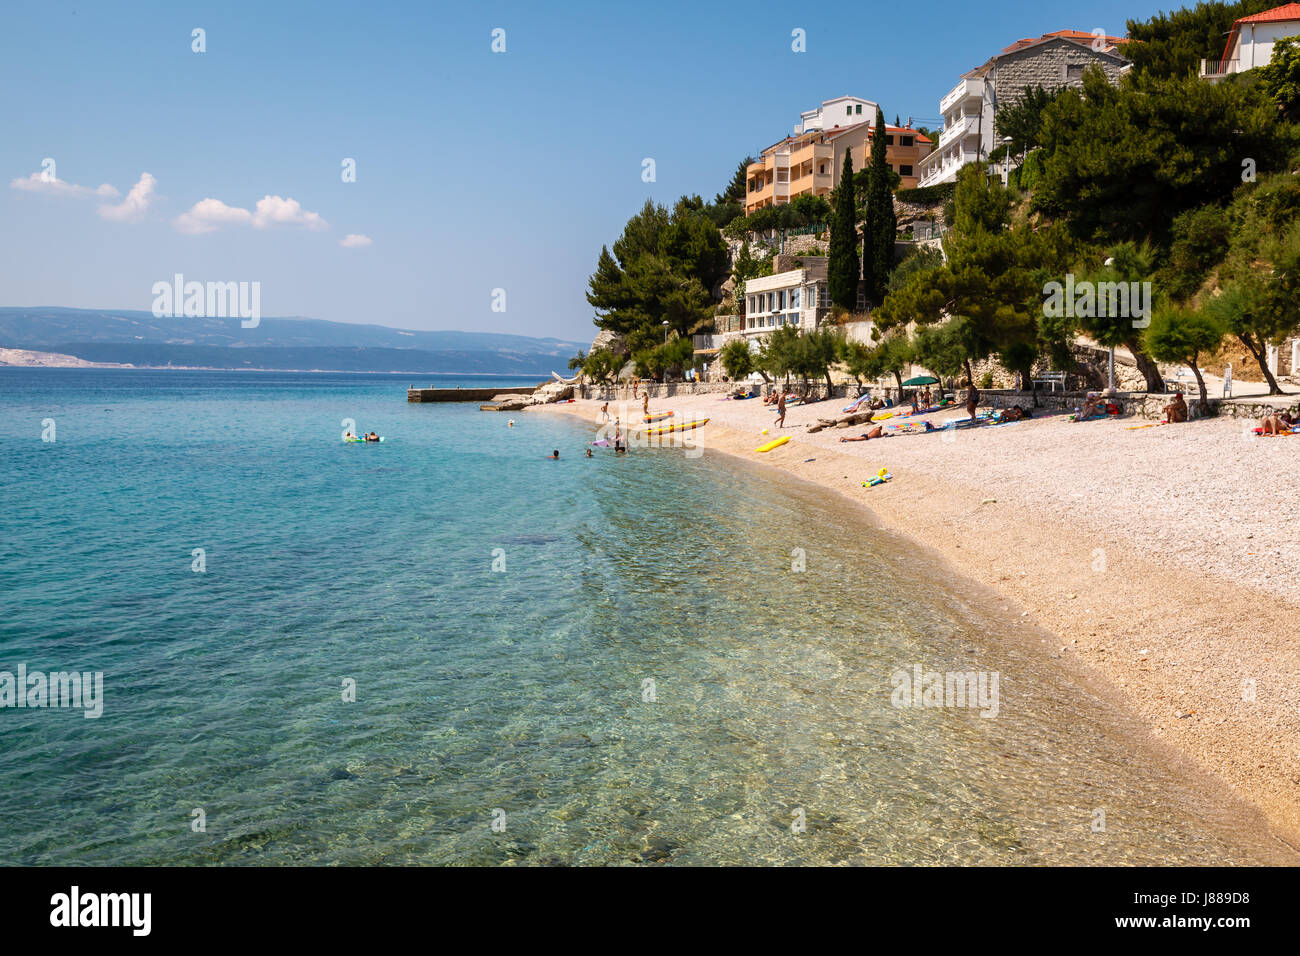 Mare blu profondo con acqua trasparente e bella spiaggia adriatica in Croazia Foto Stock